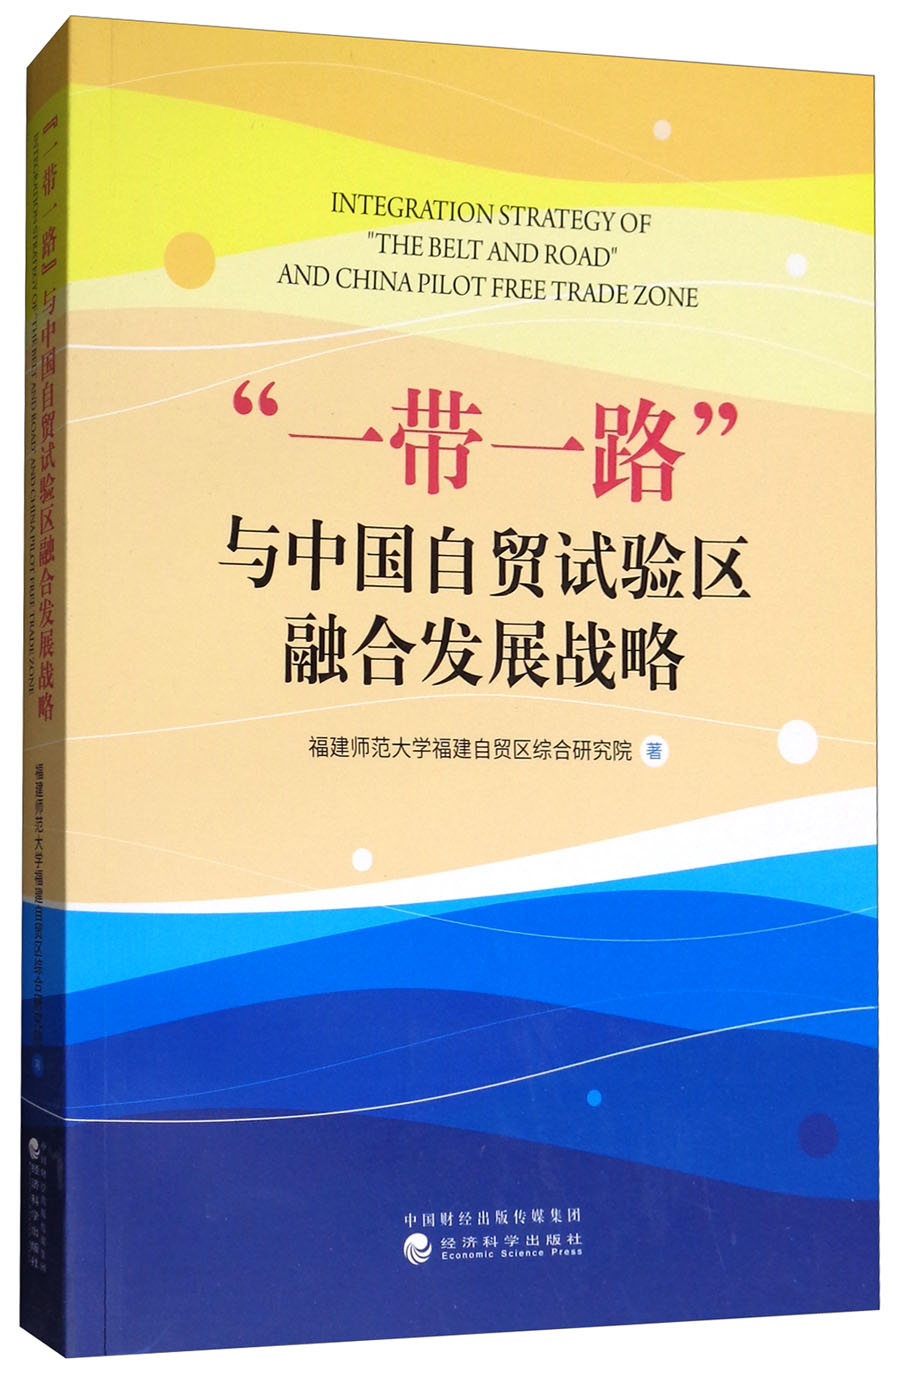 “一带一路”与中国自贸试验区融合发展战略 azw3格式下载